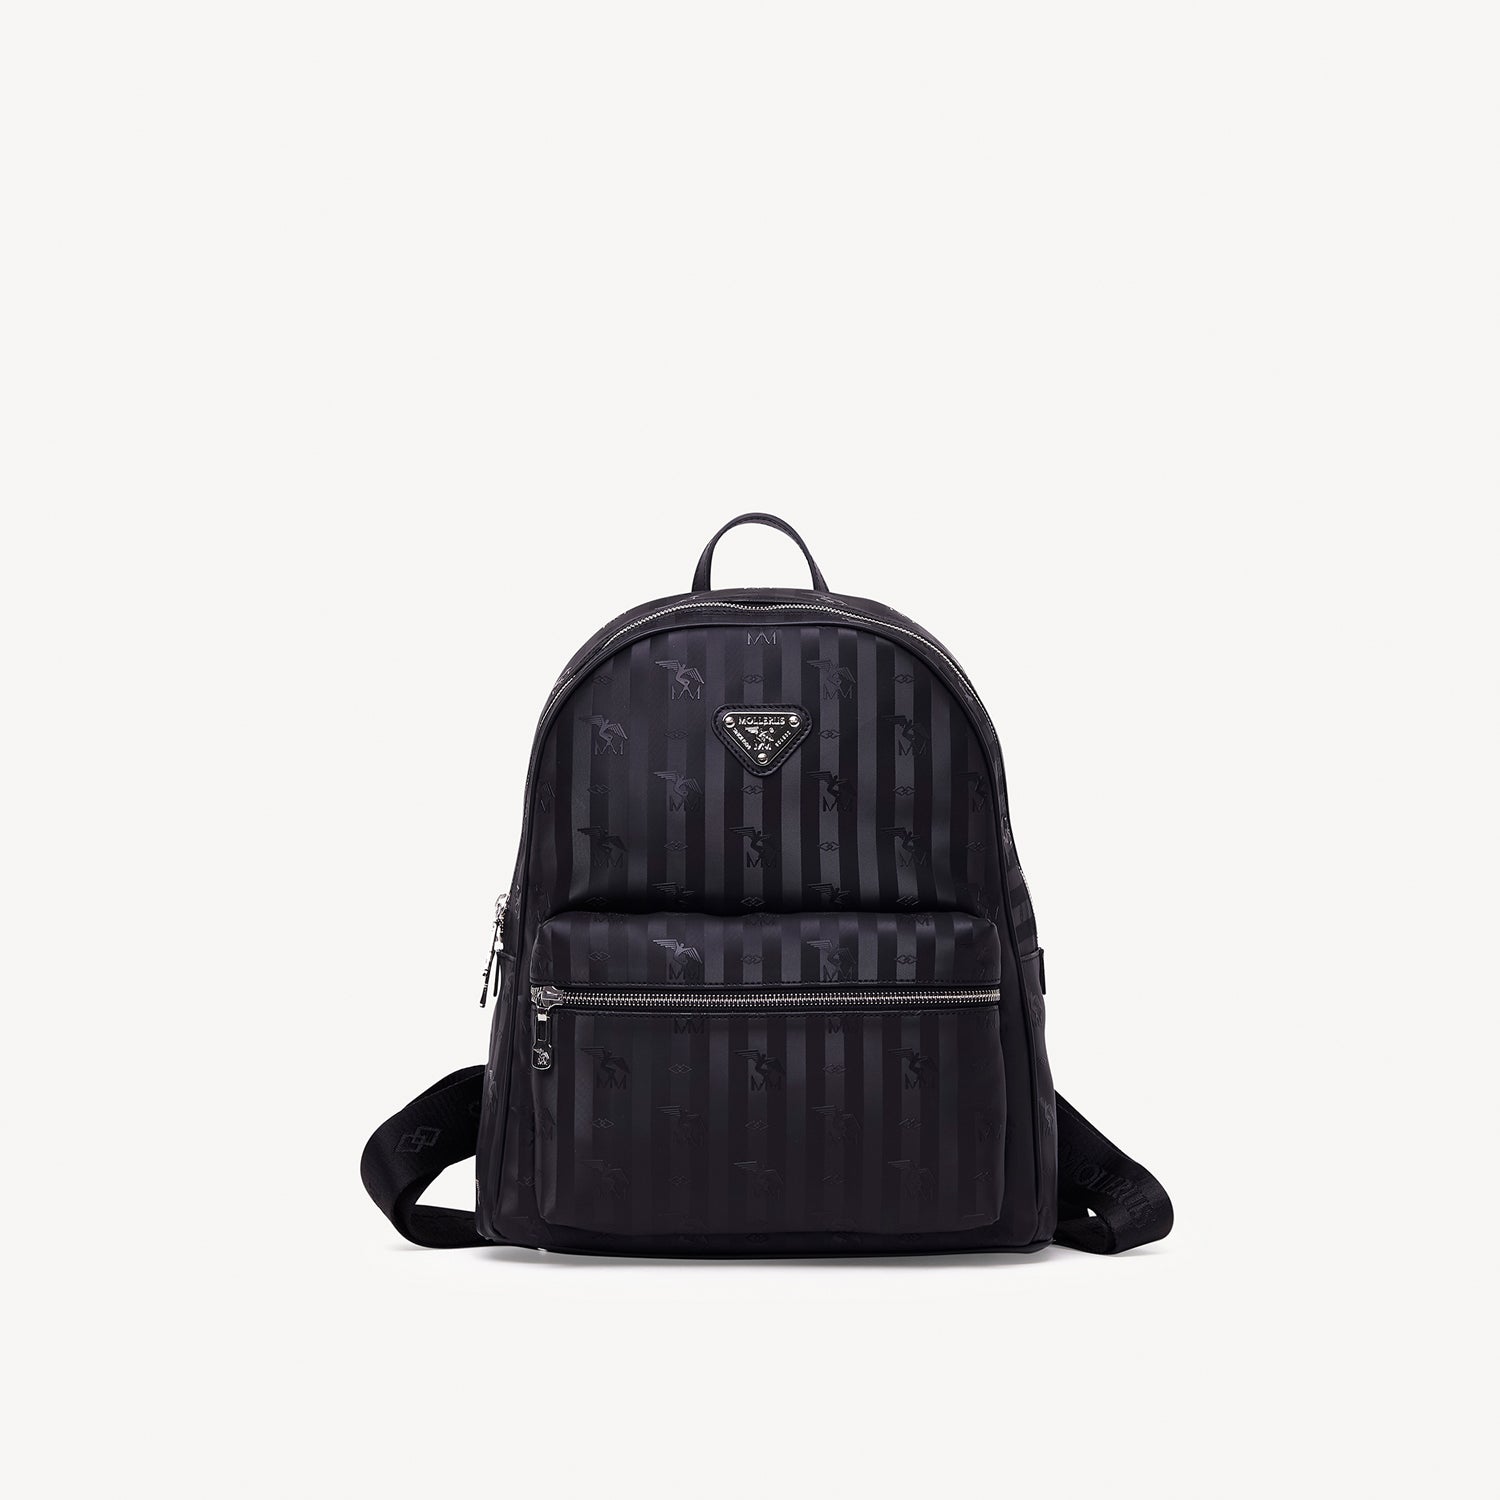 GLARUS | Backpack black/gold